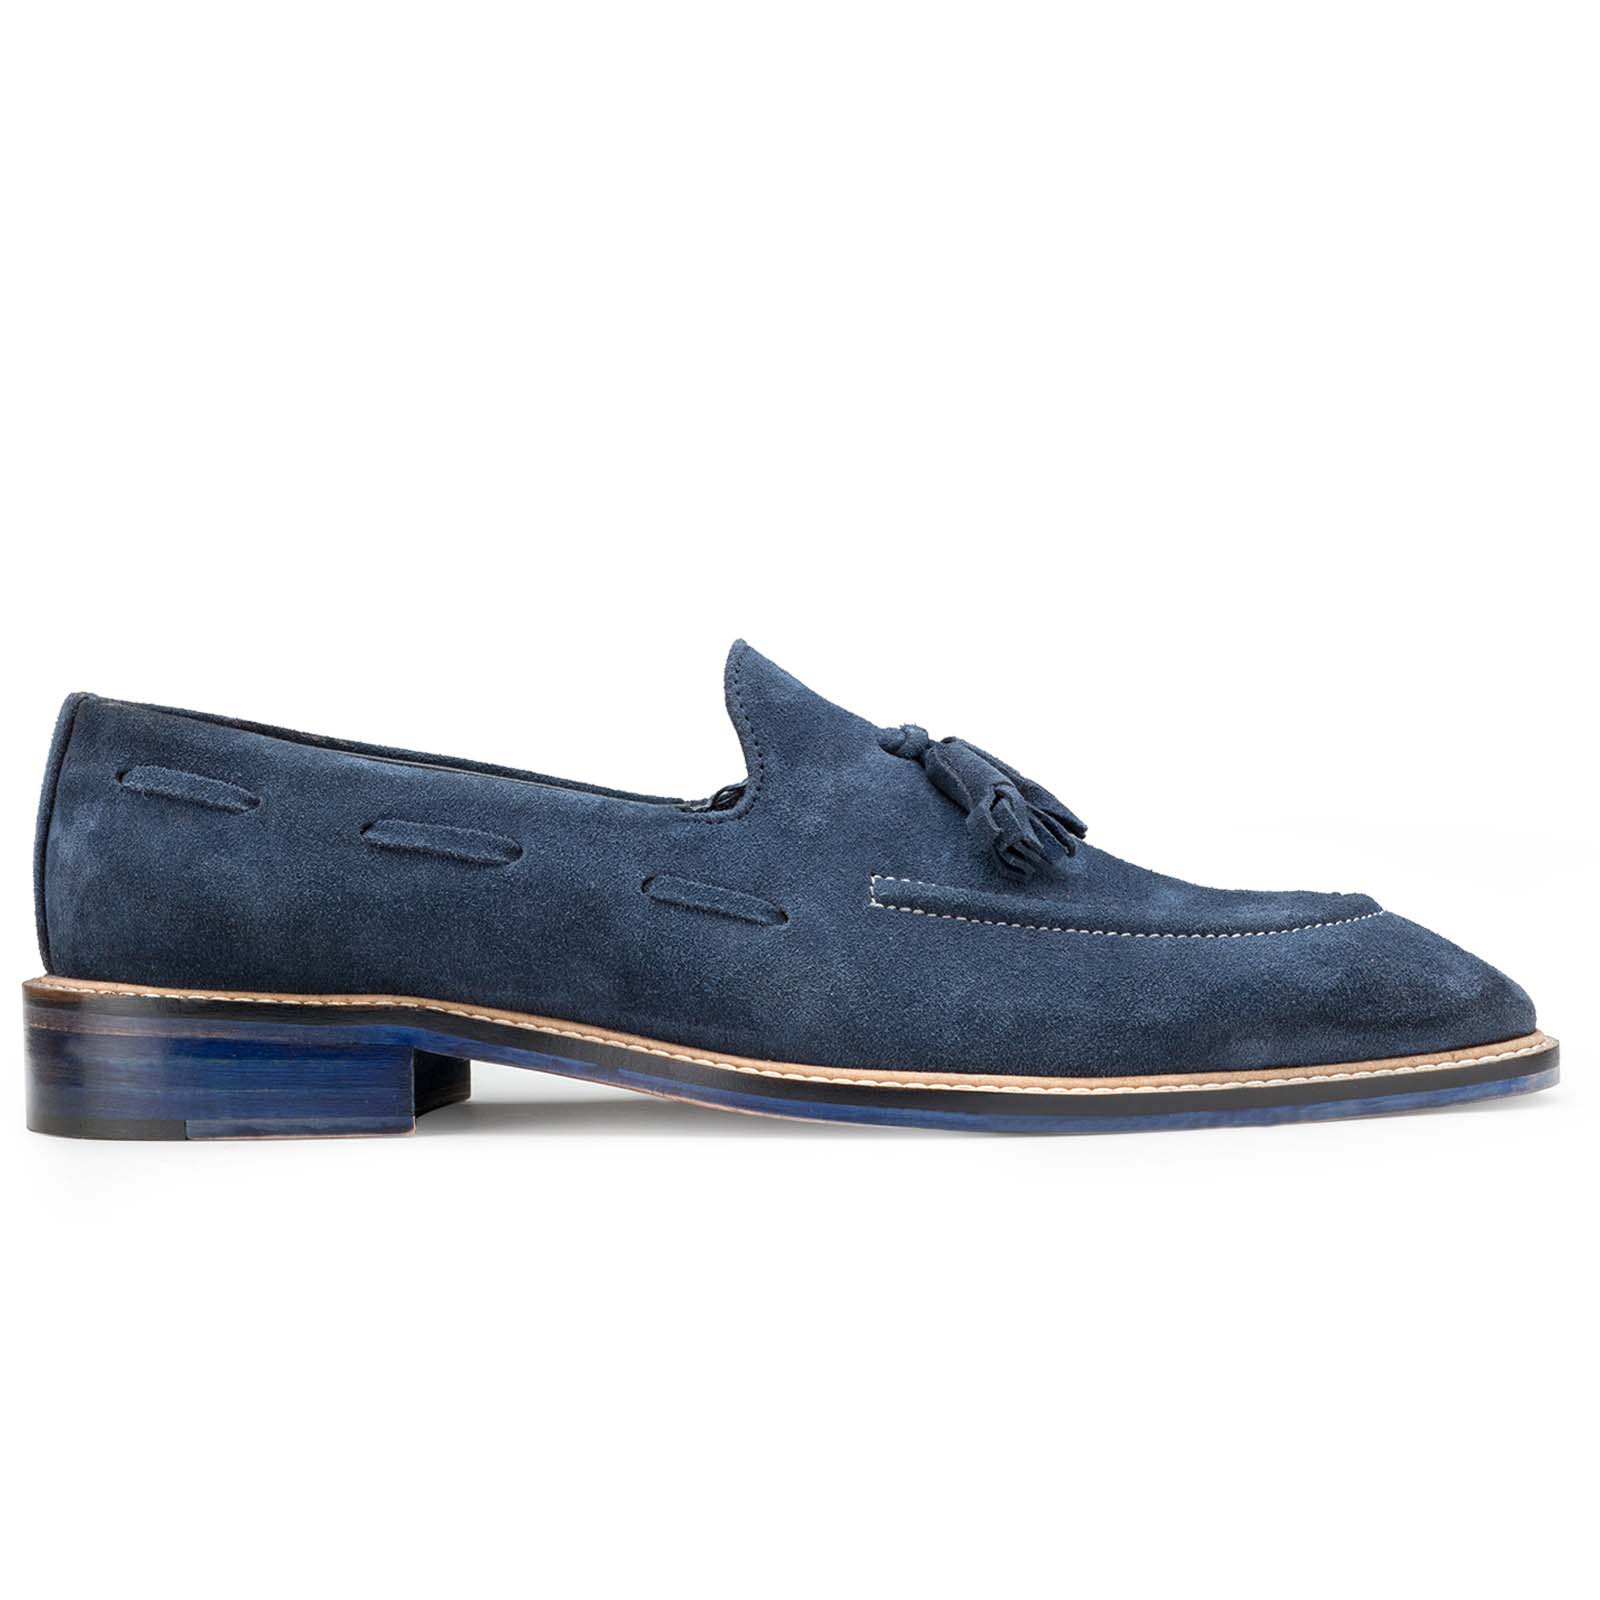 Buy Escaro Royal Navy Blue Suede Tassel Loafers, Luxury Casual Shoes | Escaro Royale